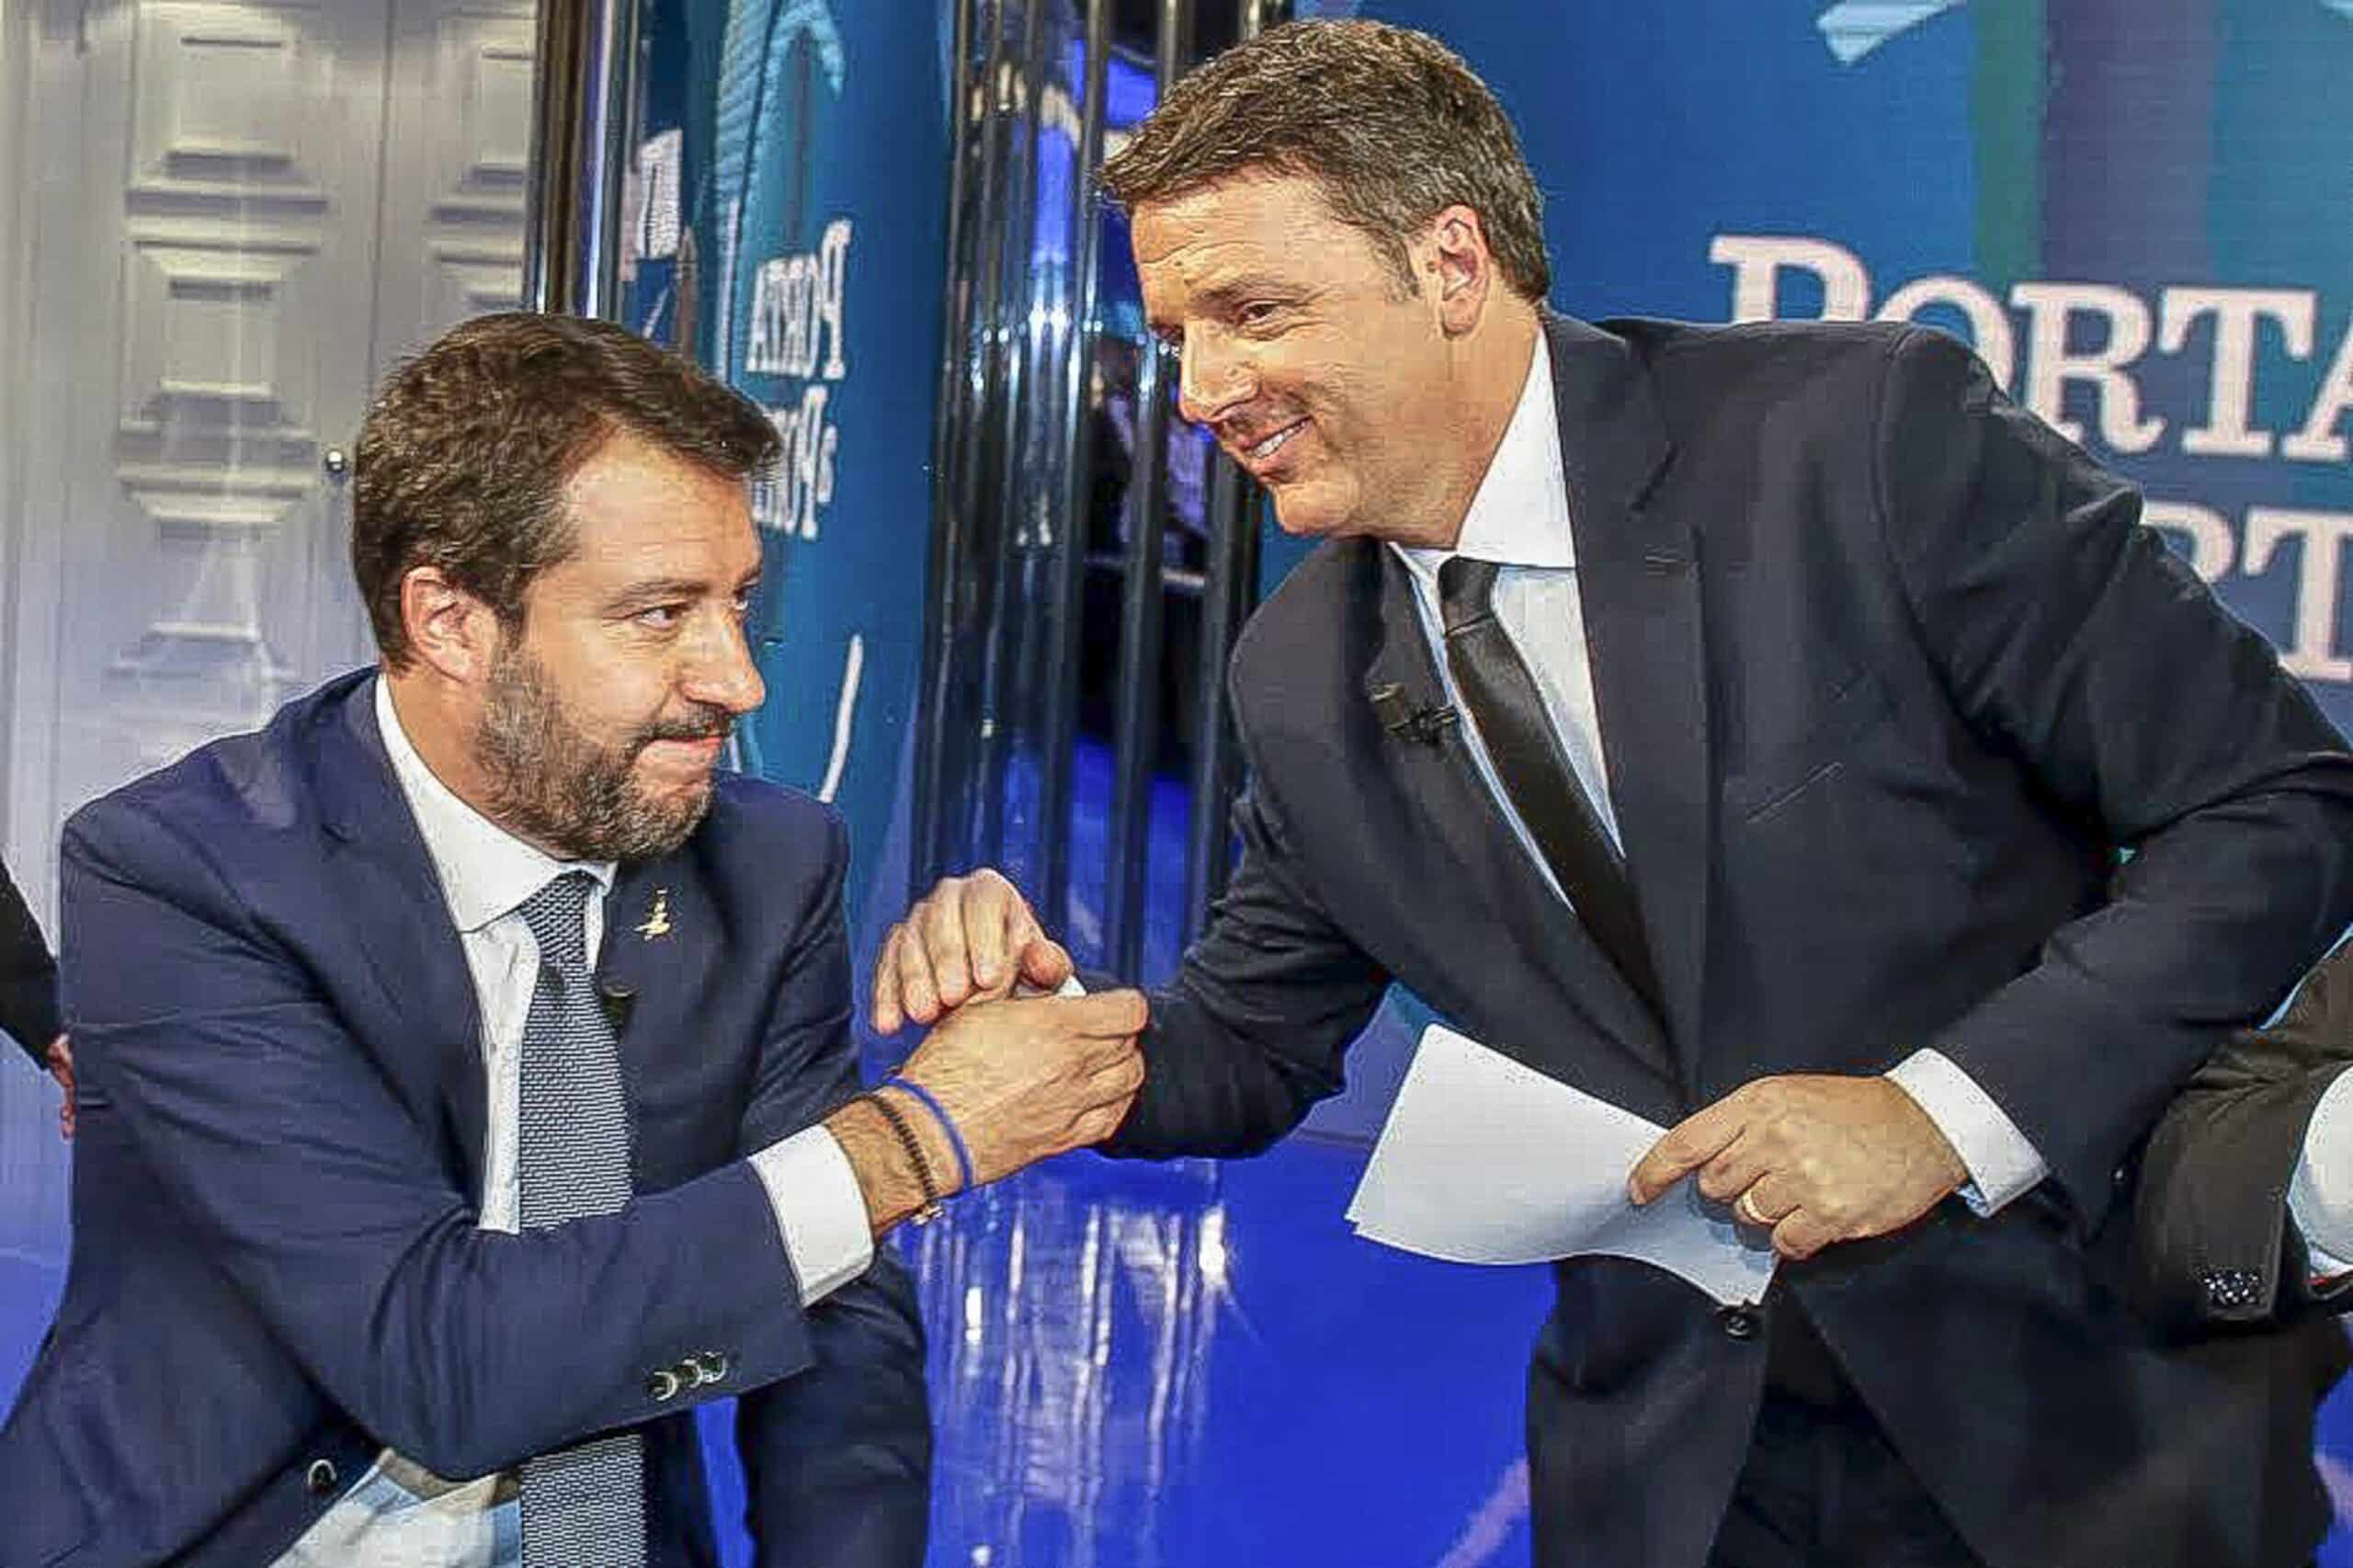 Salvini e Renzi duro scontro da Vespa ma era vero o nemici per finta? Ecco cosa ha visto un giornalista prima della diretta